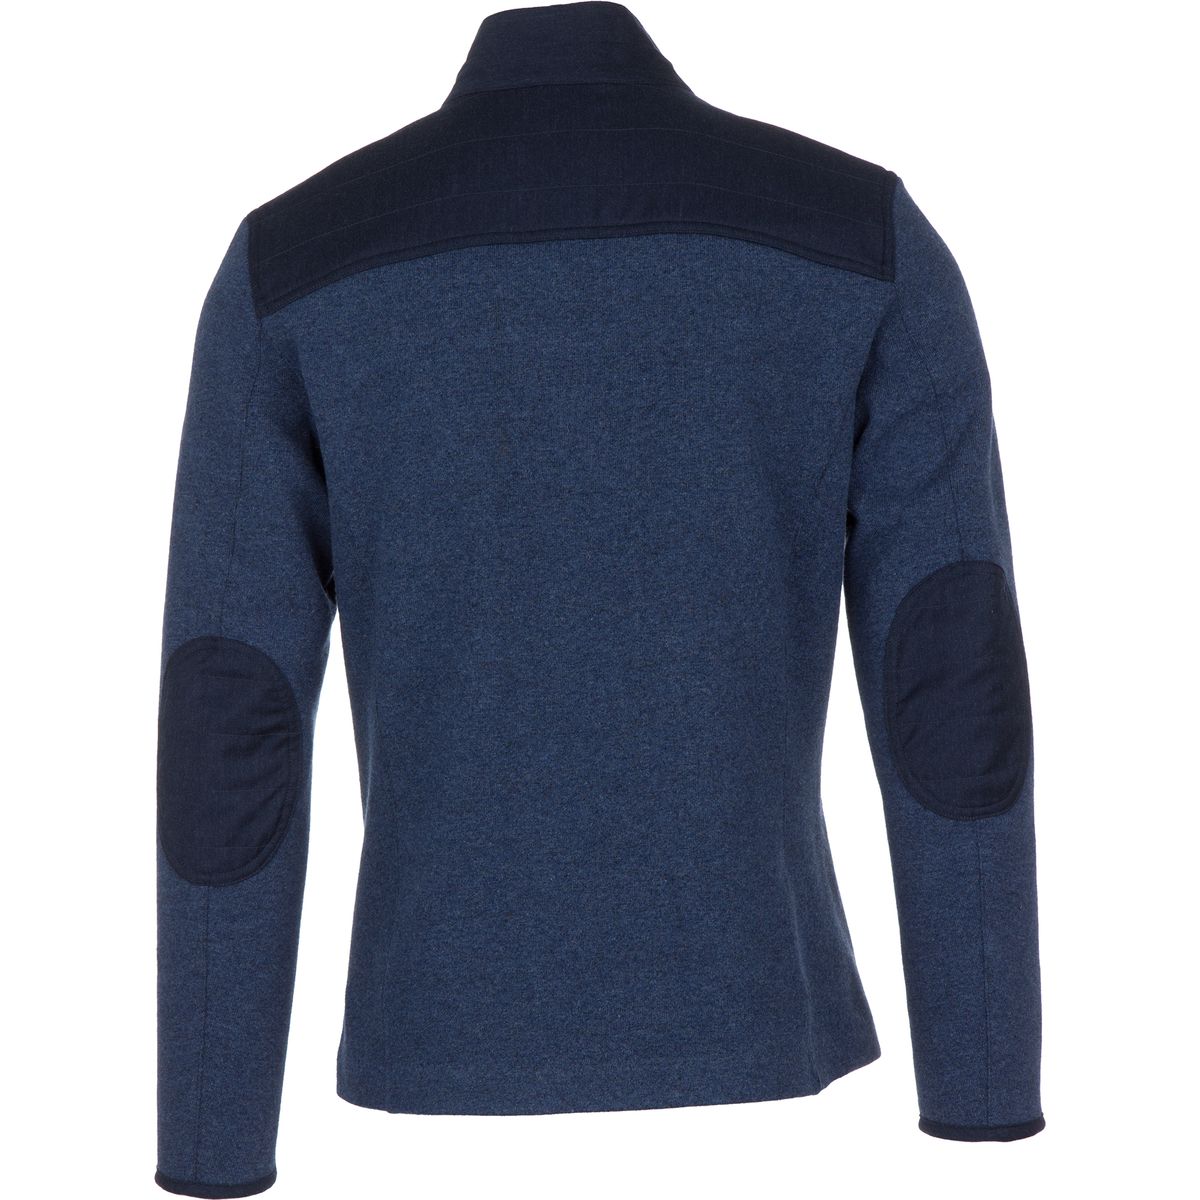 Alchemy Equipment Tech Wool Fleece Jacket - Men's | eBay